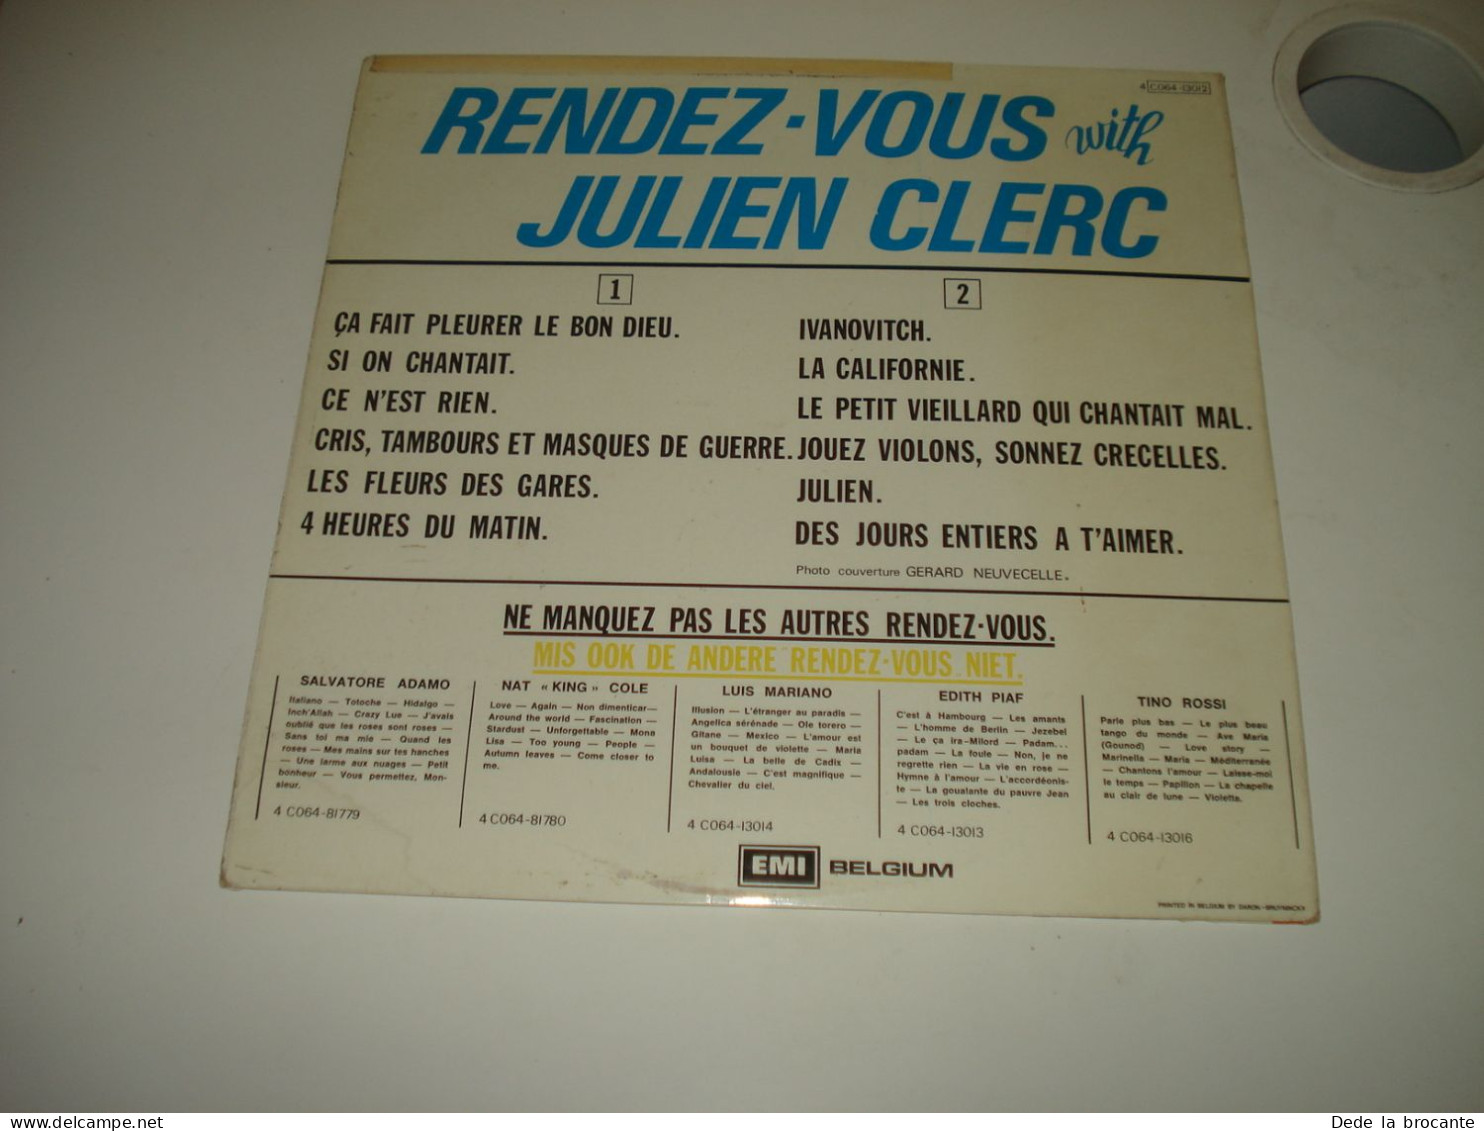 B14 / Julien Clerc – Rendez-Vous With Julien Clerc - 4C064-1312 - BE 1974  NM/EX - Disco & Pop